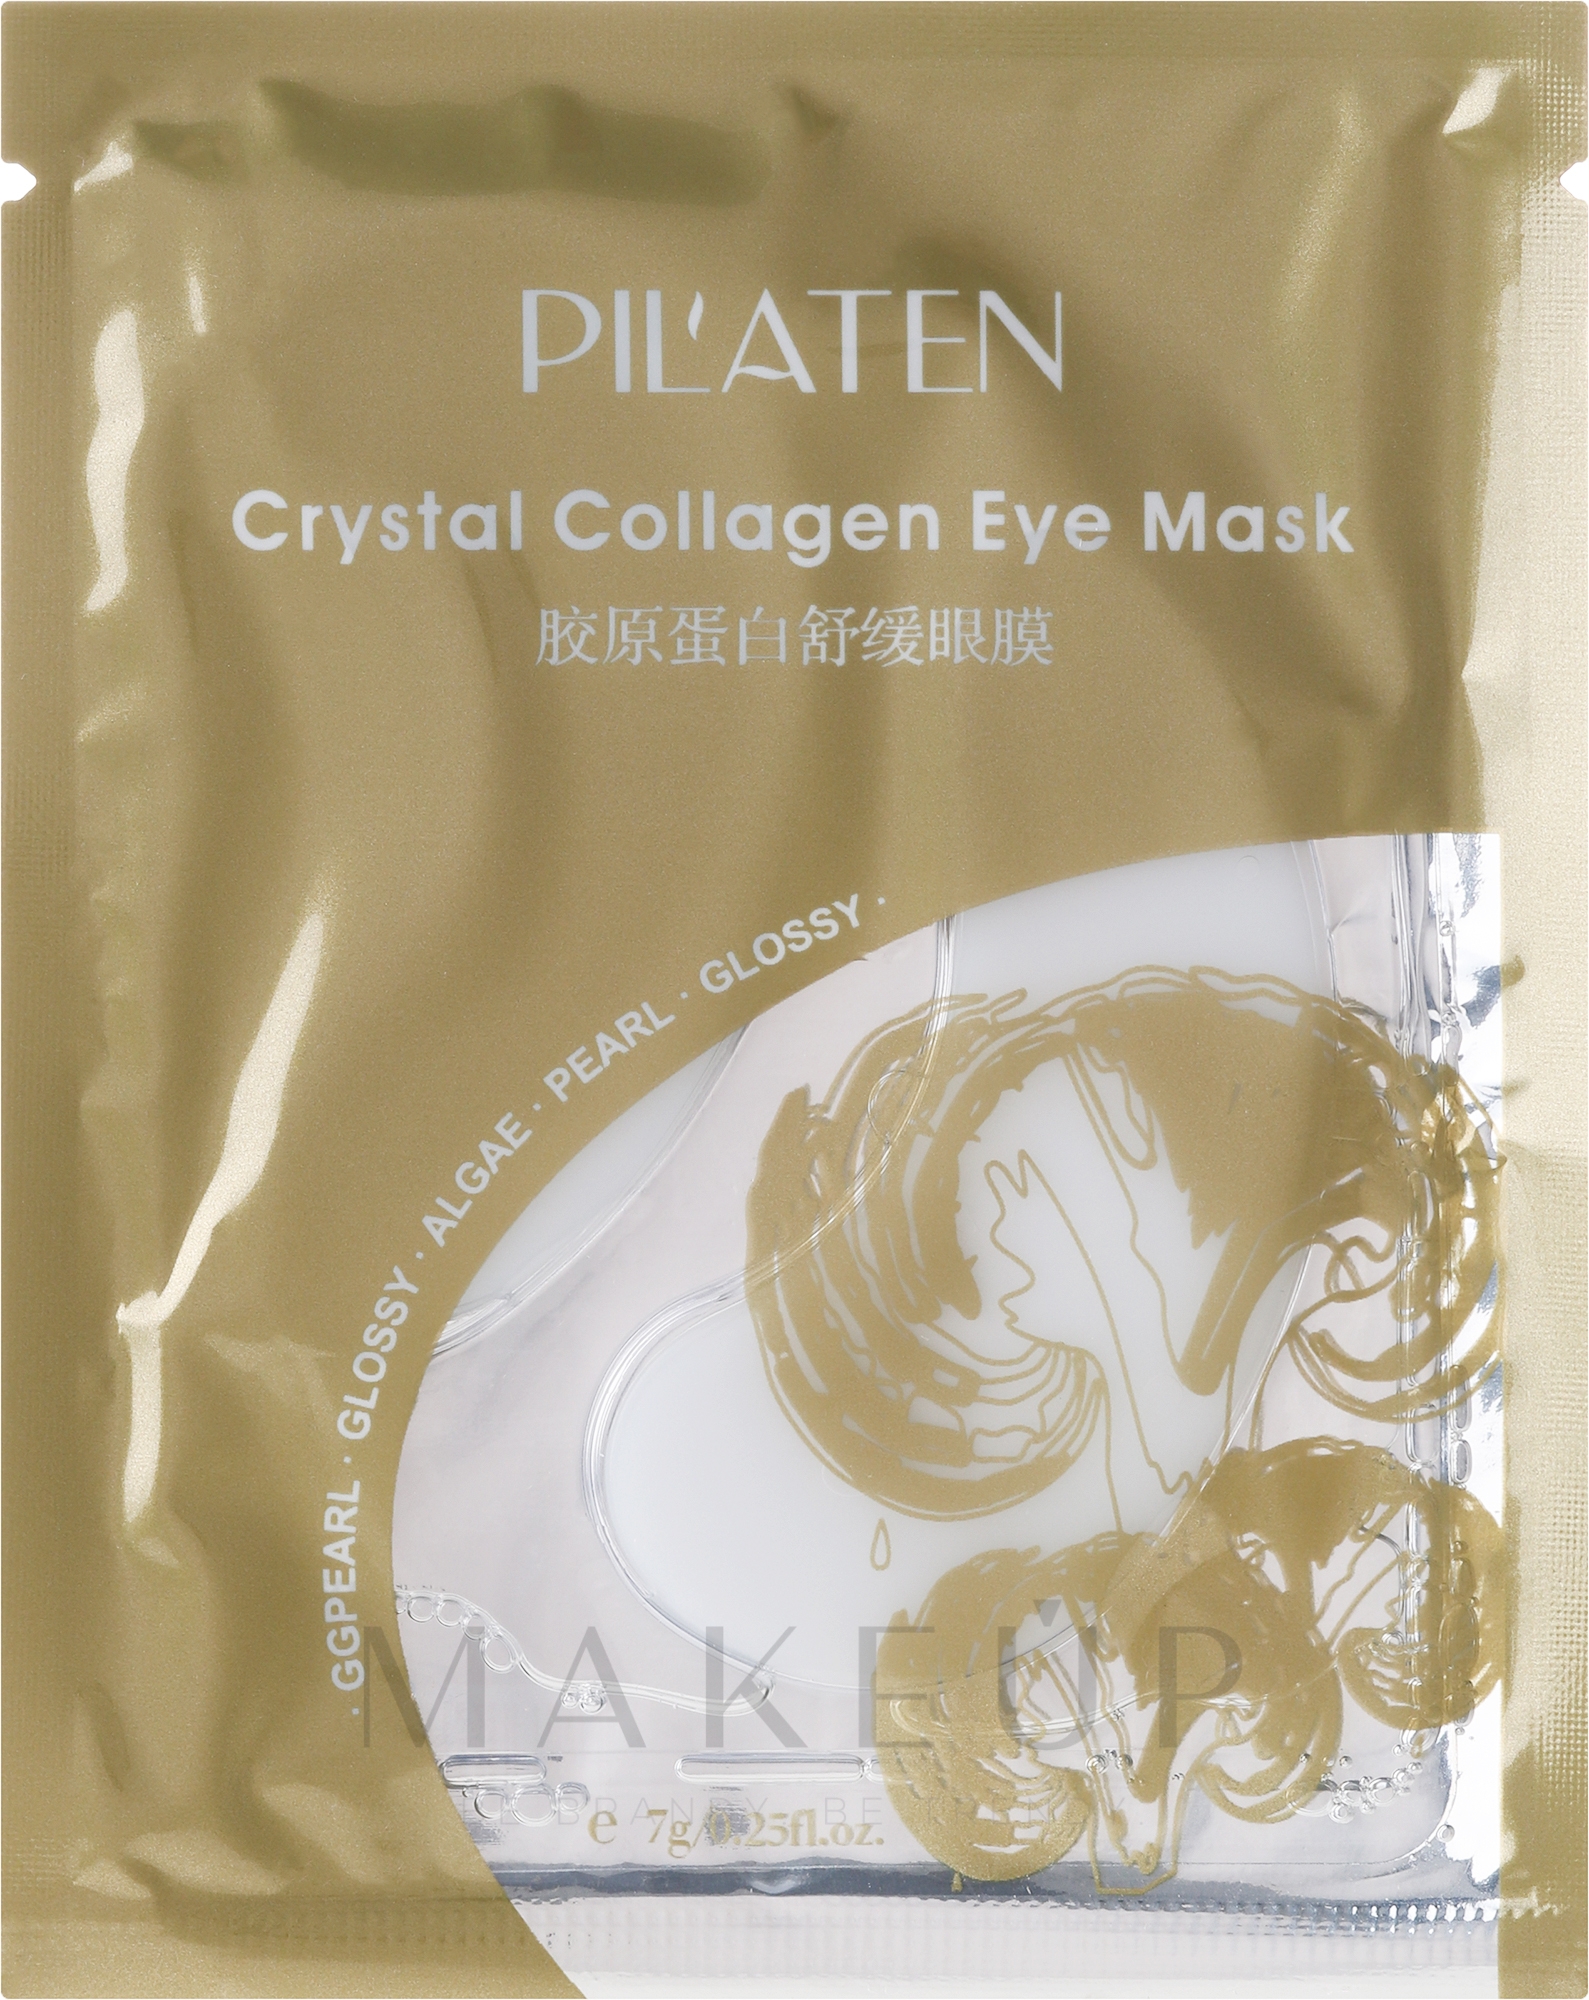 Algenmaske für die Augenpartie mit Kollagen - Pil'aten Crystal Collagen Eye Mask — Bild 7 g